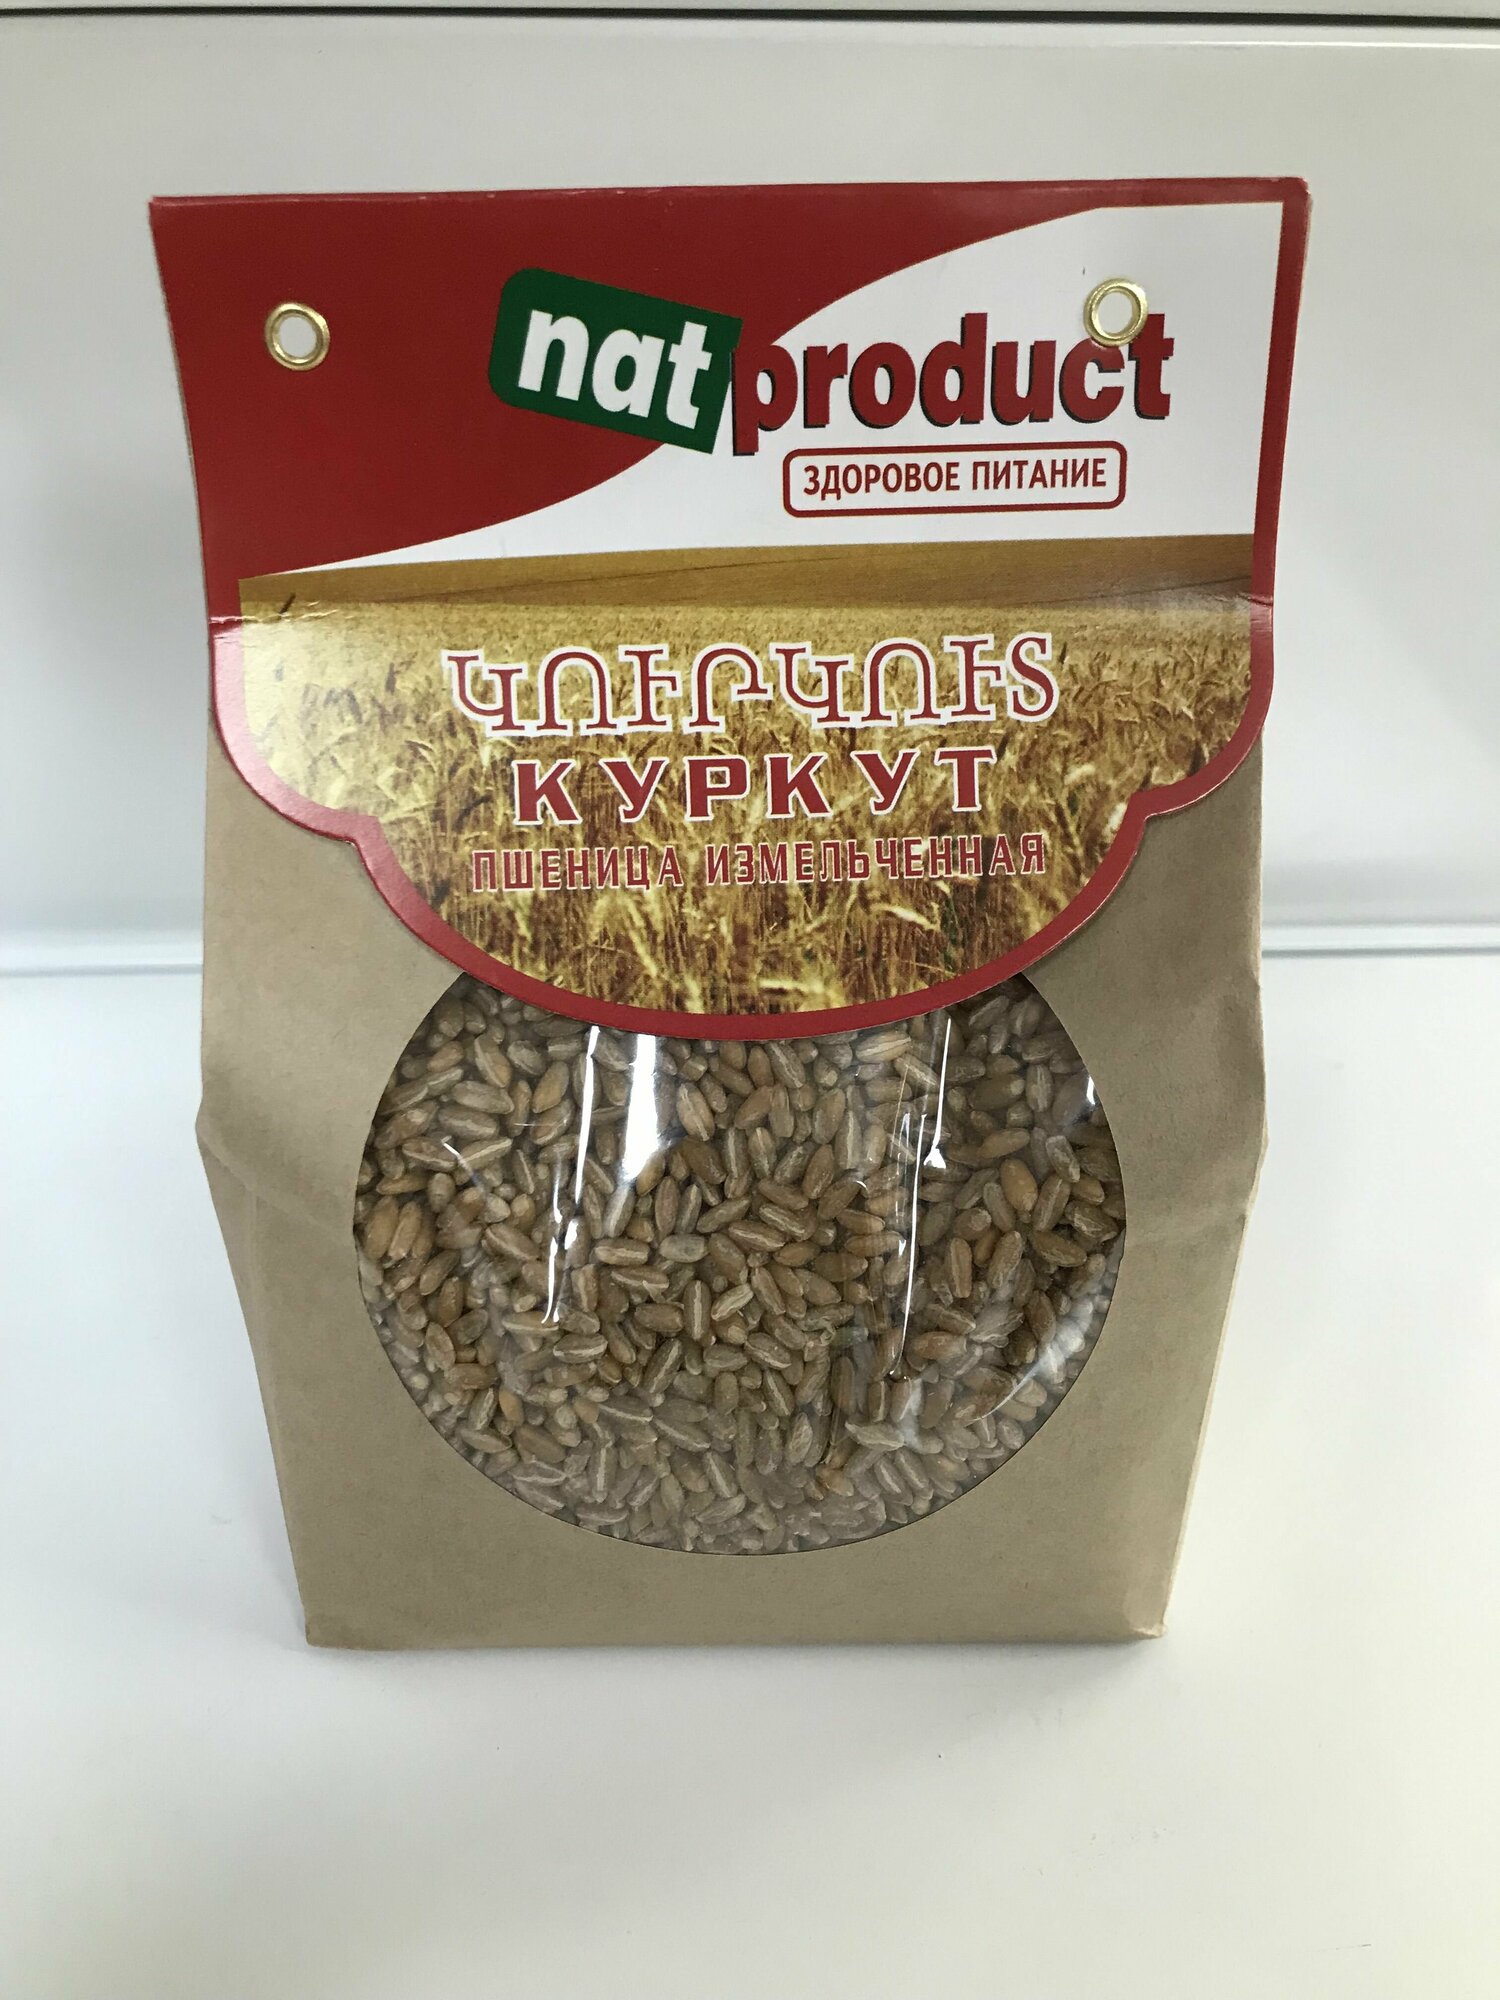 Куркут (Пшеница измельченная) Natrpoduct 1 кг. Армения